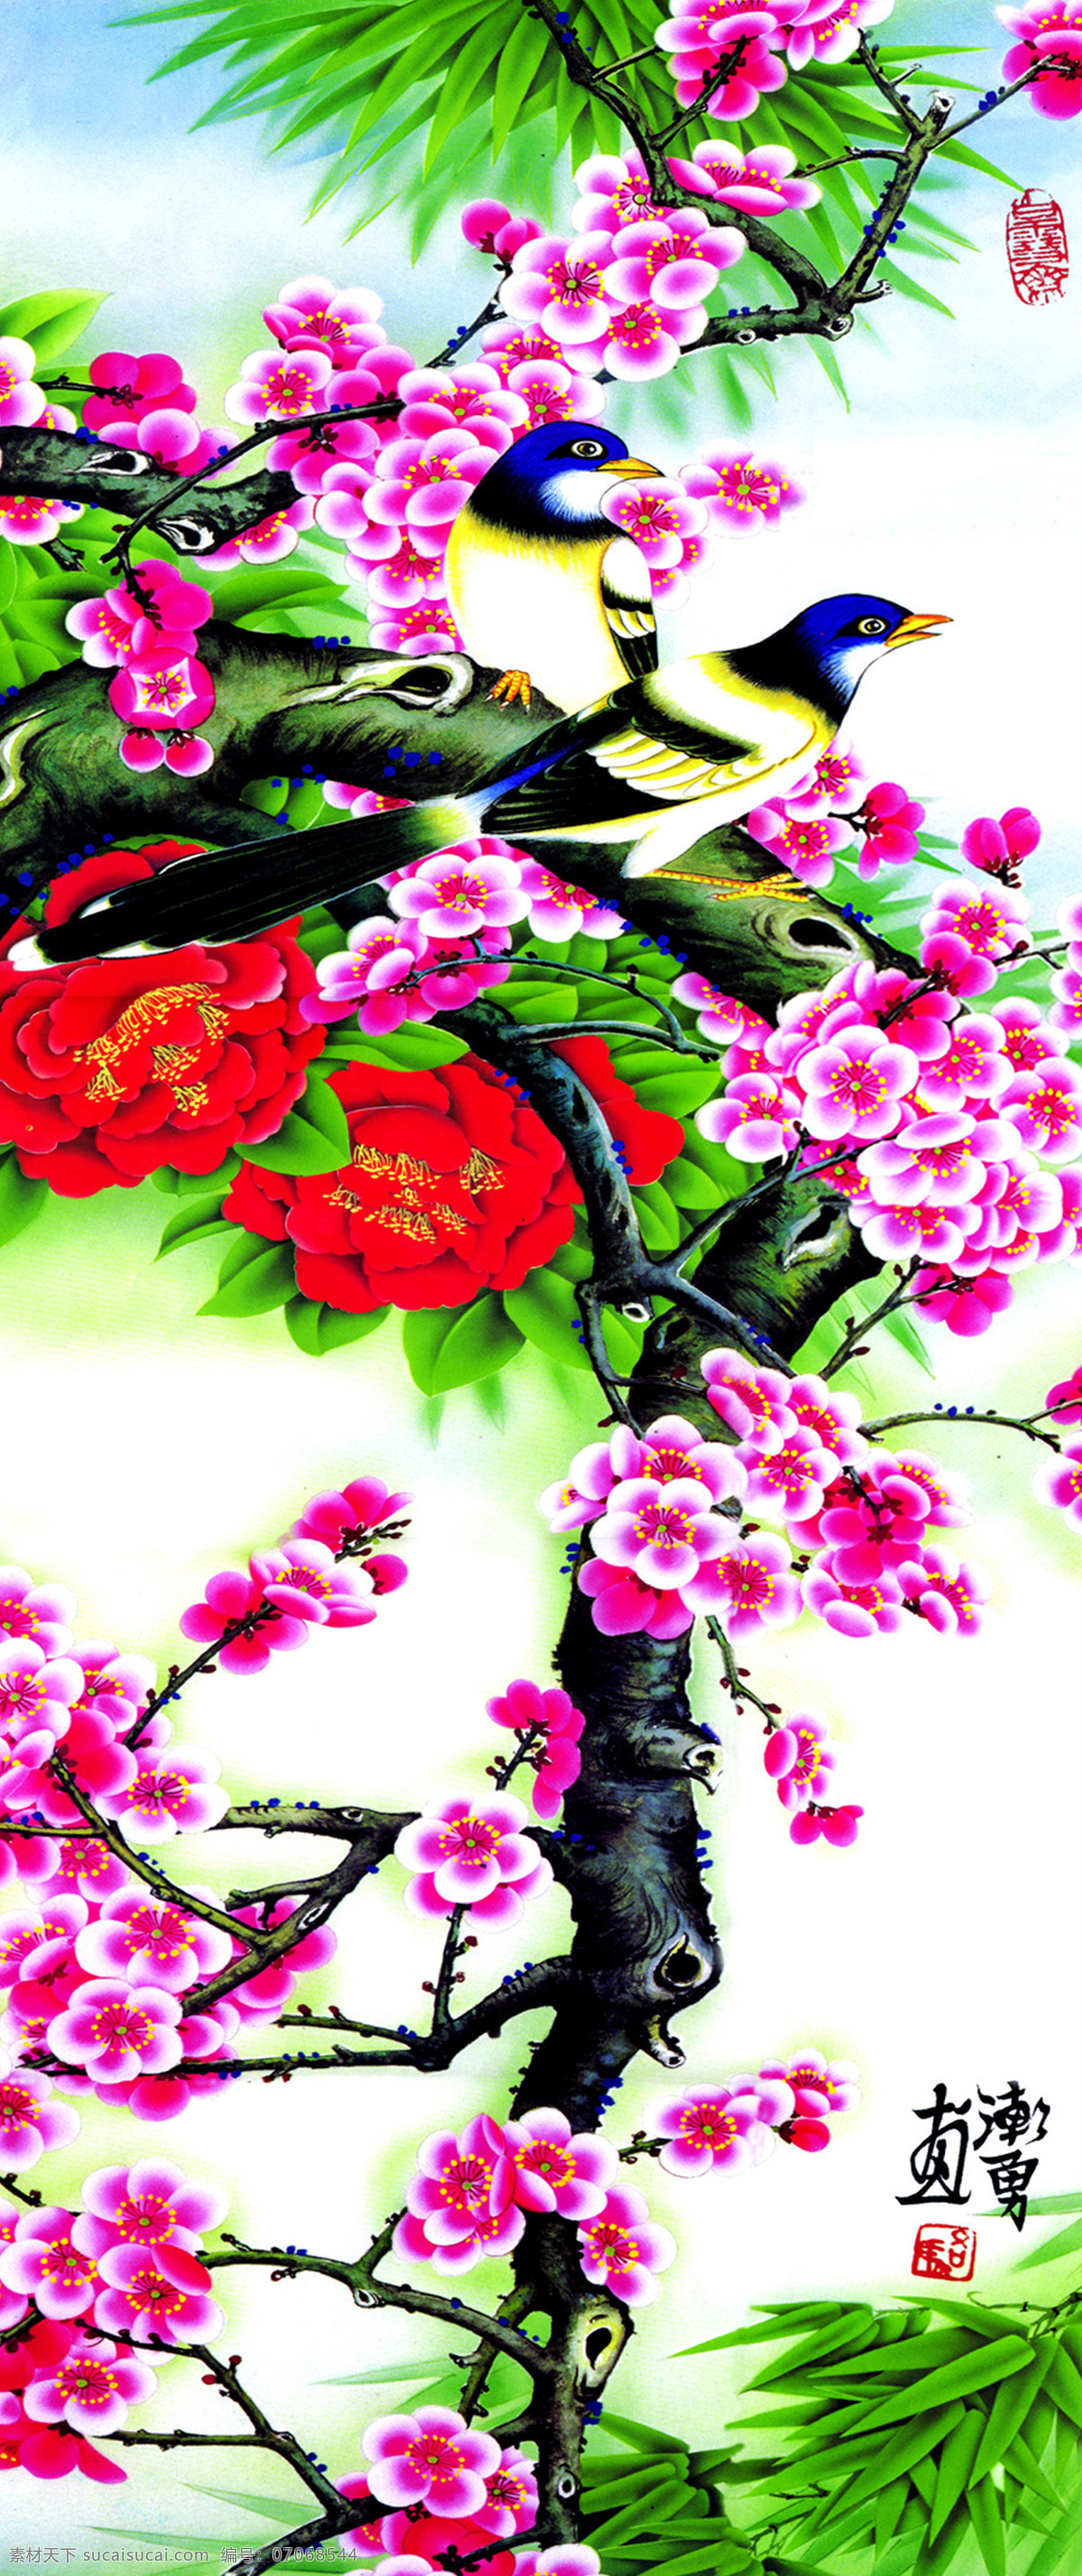 喜鹊 梅花 花鸟画 中国画 国画 水墨画 丹青 绘画艺术 传统绘画 工笔画 油画 书画文字 文化艺术